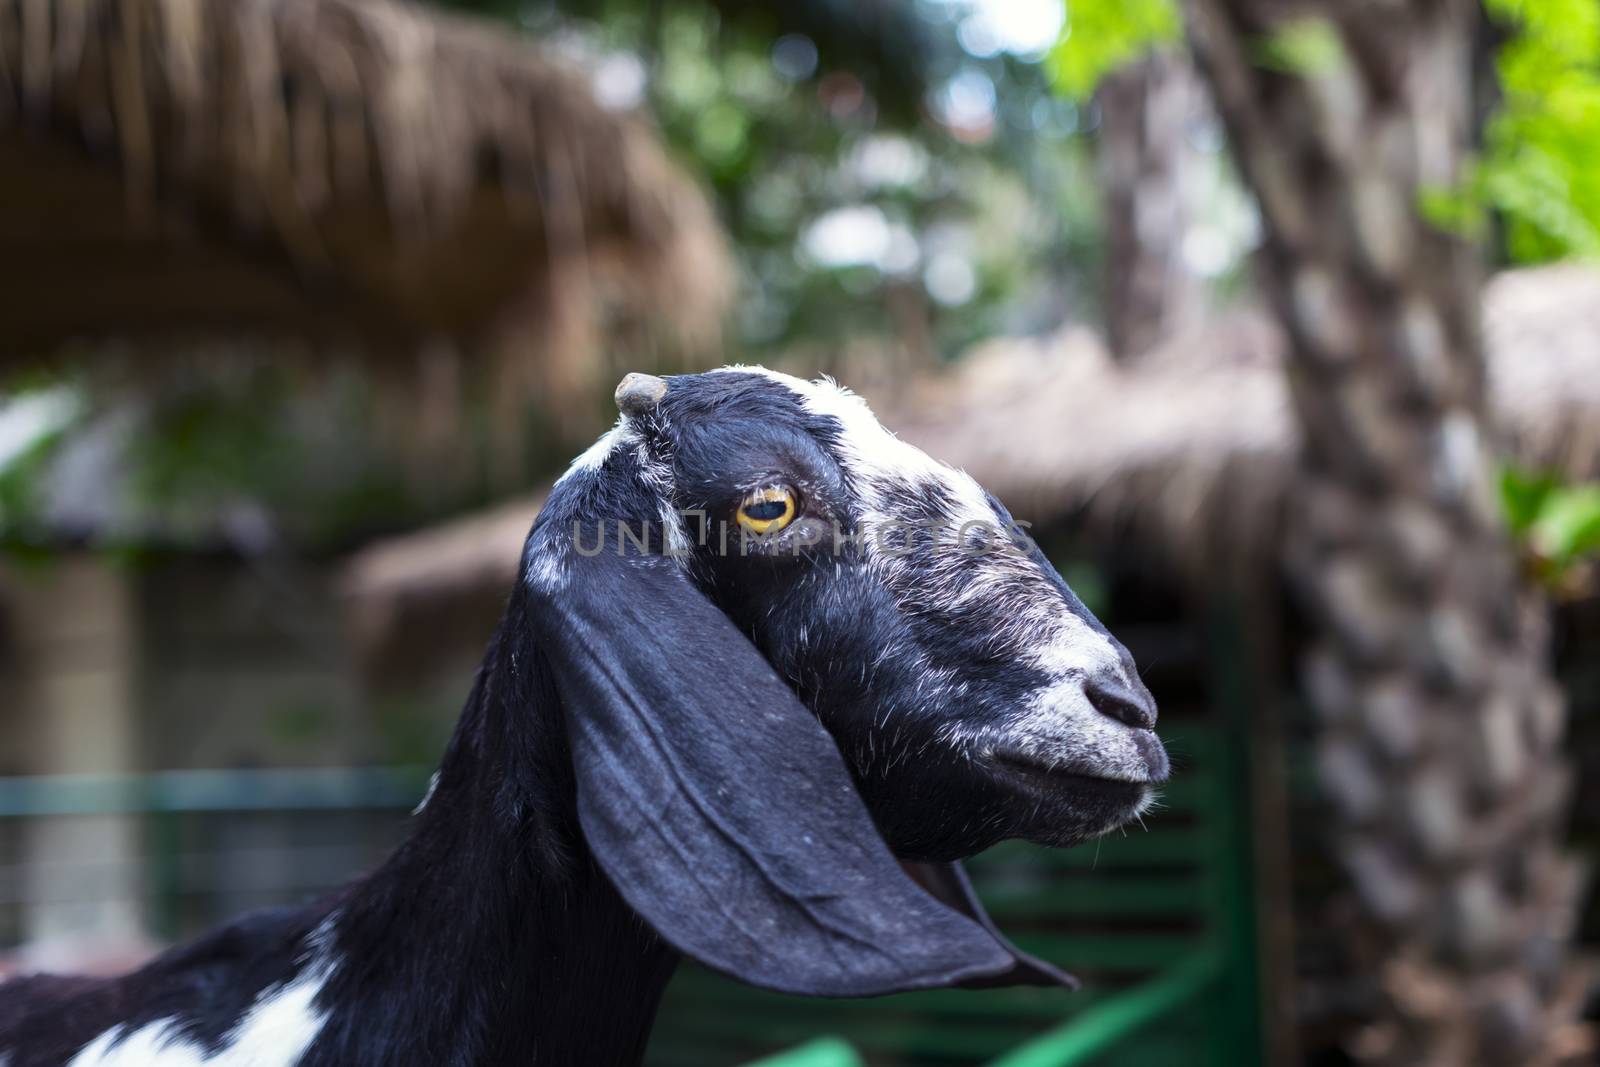 Muzzle Goat, Thailand.  2015 - Year of Goat.